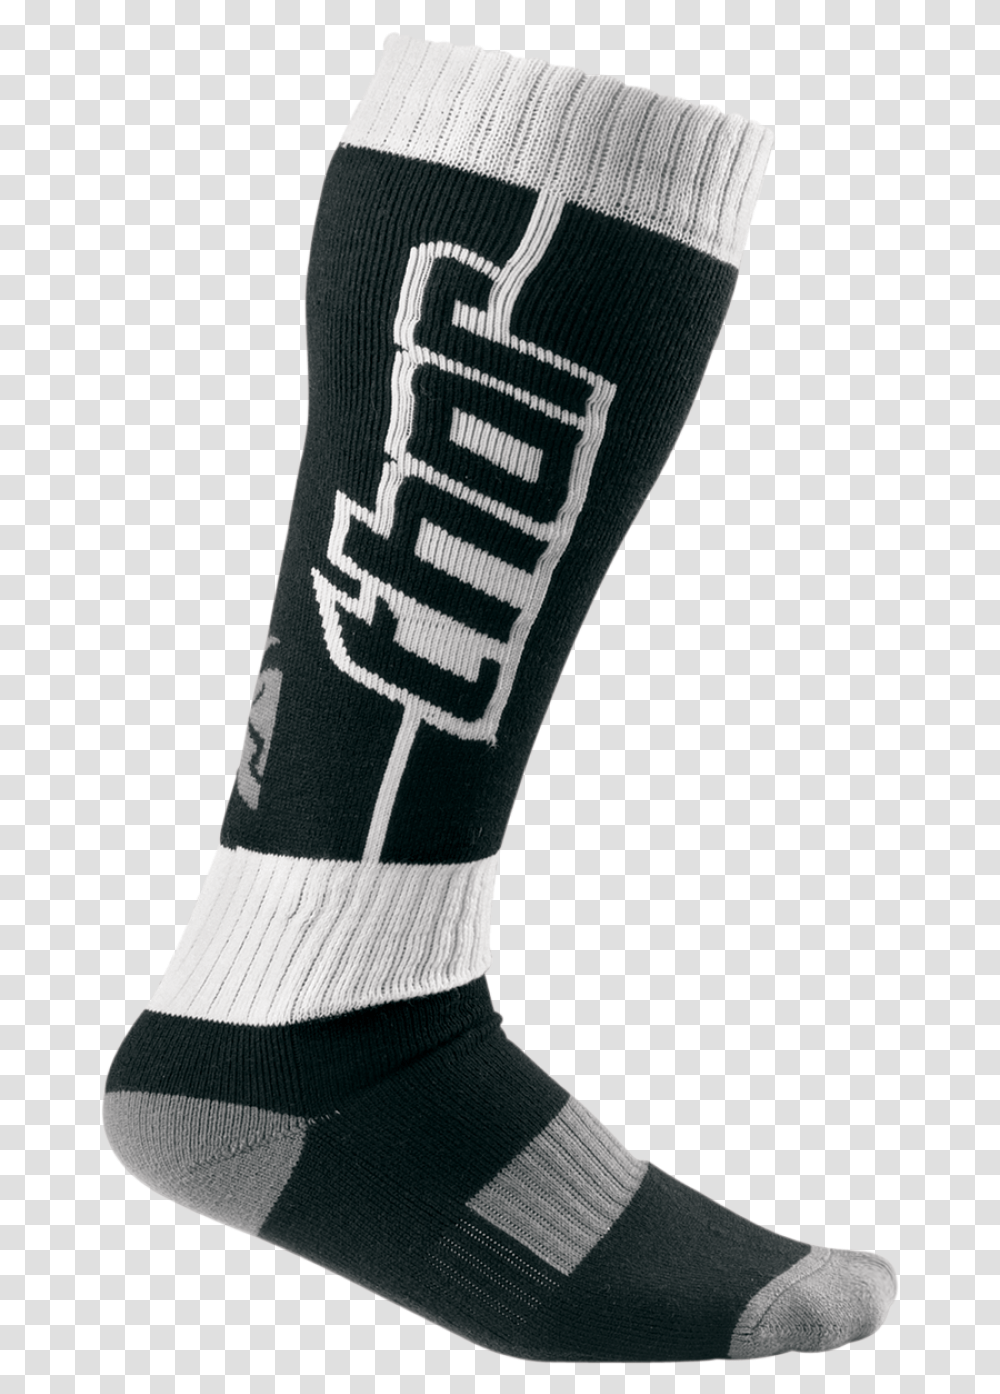 Thor Letter Socks Image Sock, Clothing, Apparel, Shoe, Footwear Transparent Png